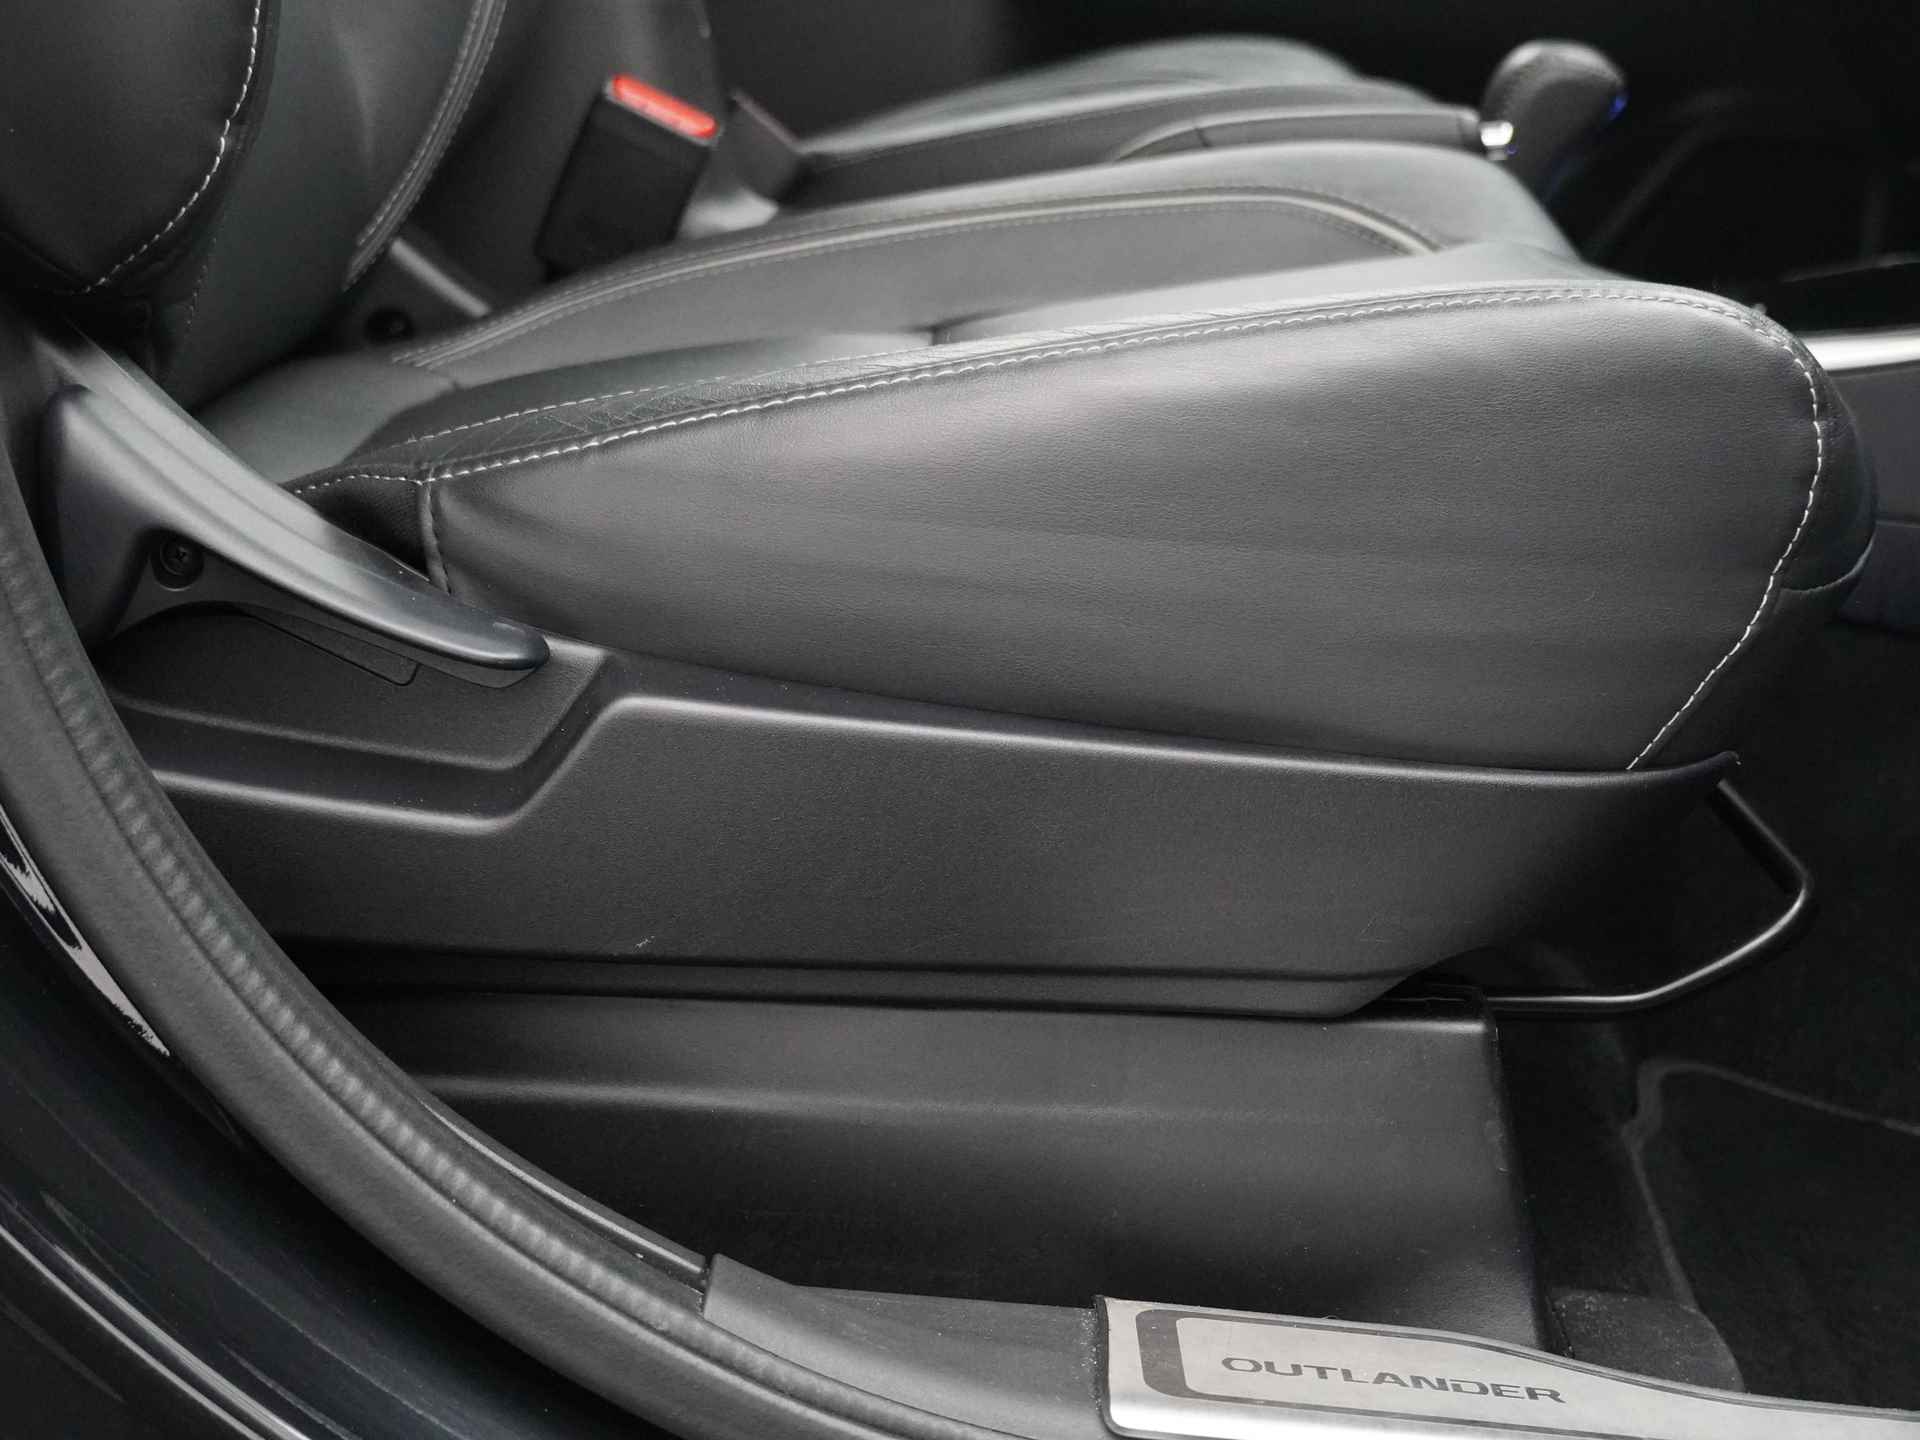 Mitsubishi Outlander 2.0 Instyle+ 4WD - Schuifkanteldak - Lederen bekleding - Voorraam verwarming - Apple CarPlay / Android Auto - Elektrische achterklep - 12 Maanden bovag garantie - 43/48